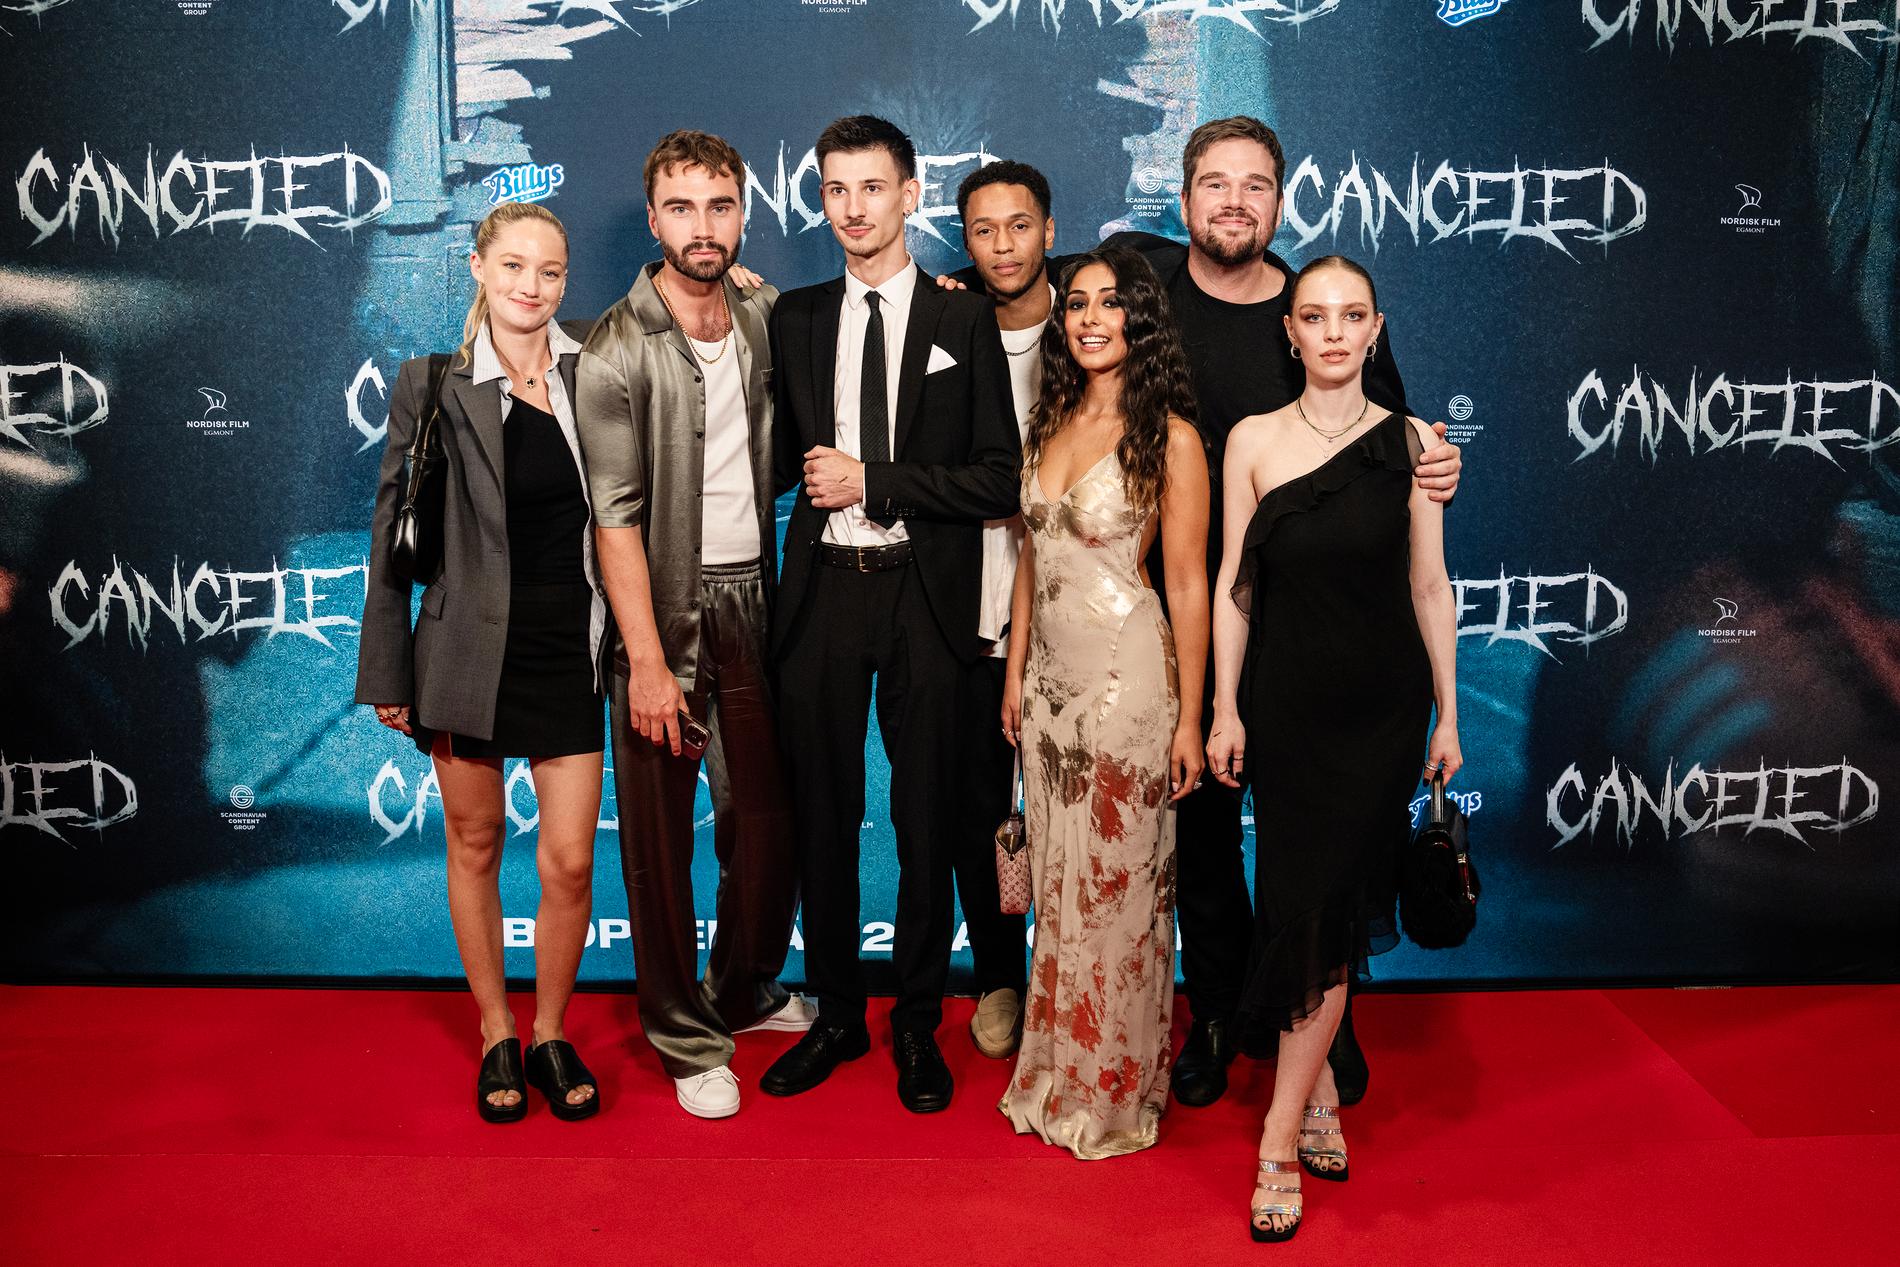 Några av personerna bakom filmen ”Cancelled” som var nominerad till publikpriset, som delades ut i samarbete med Aftonbladet. 